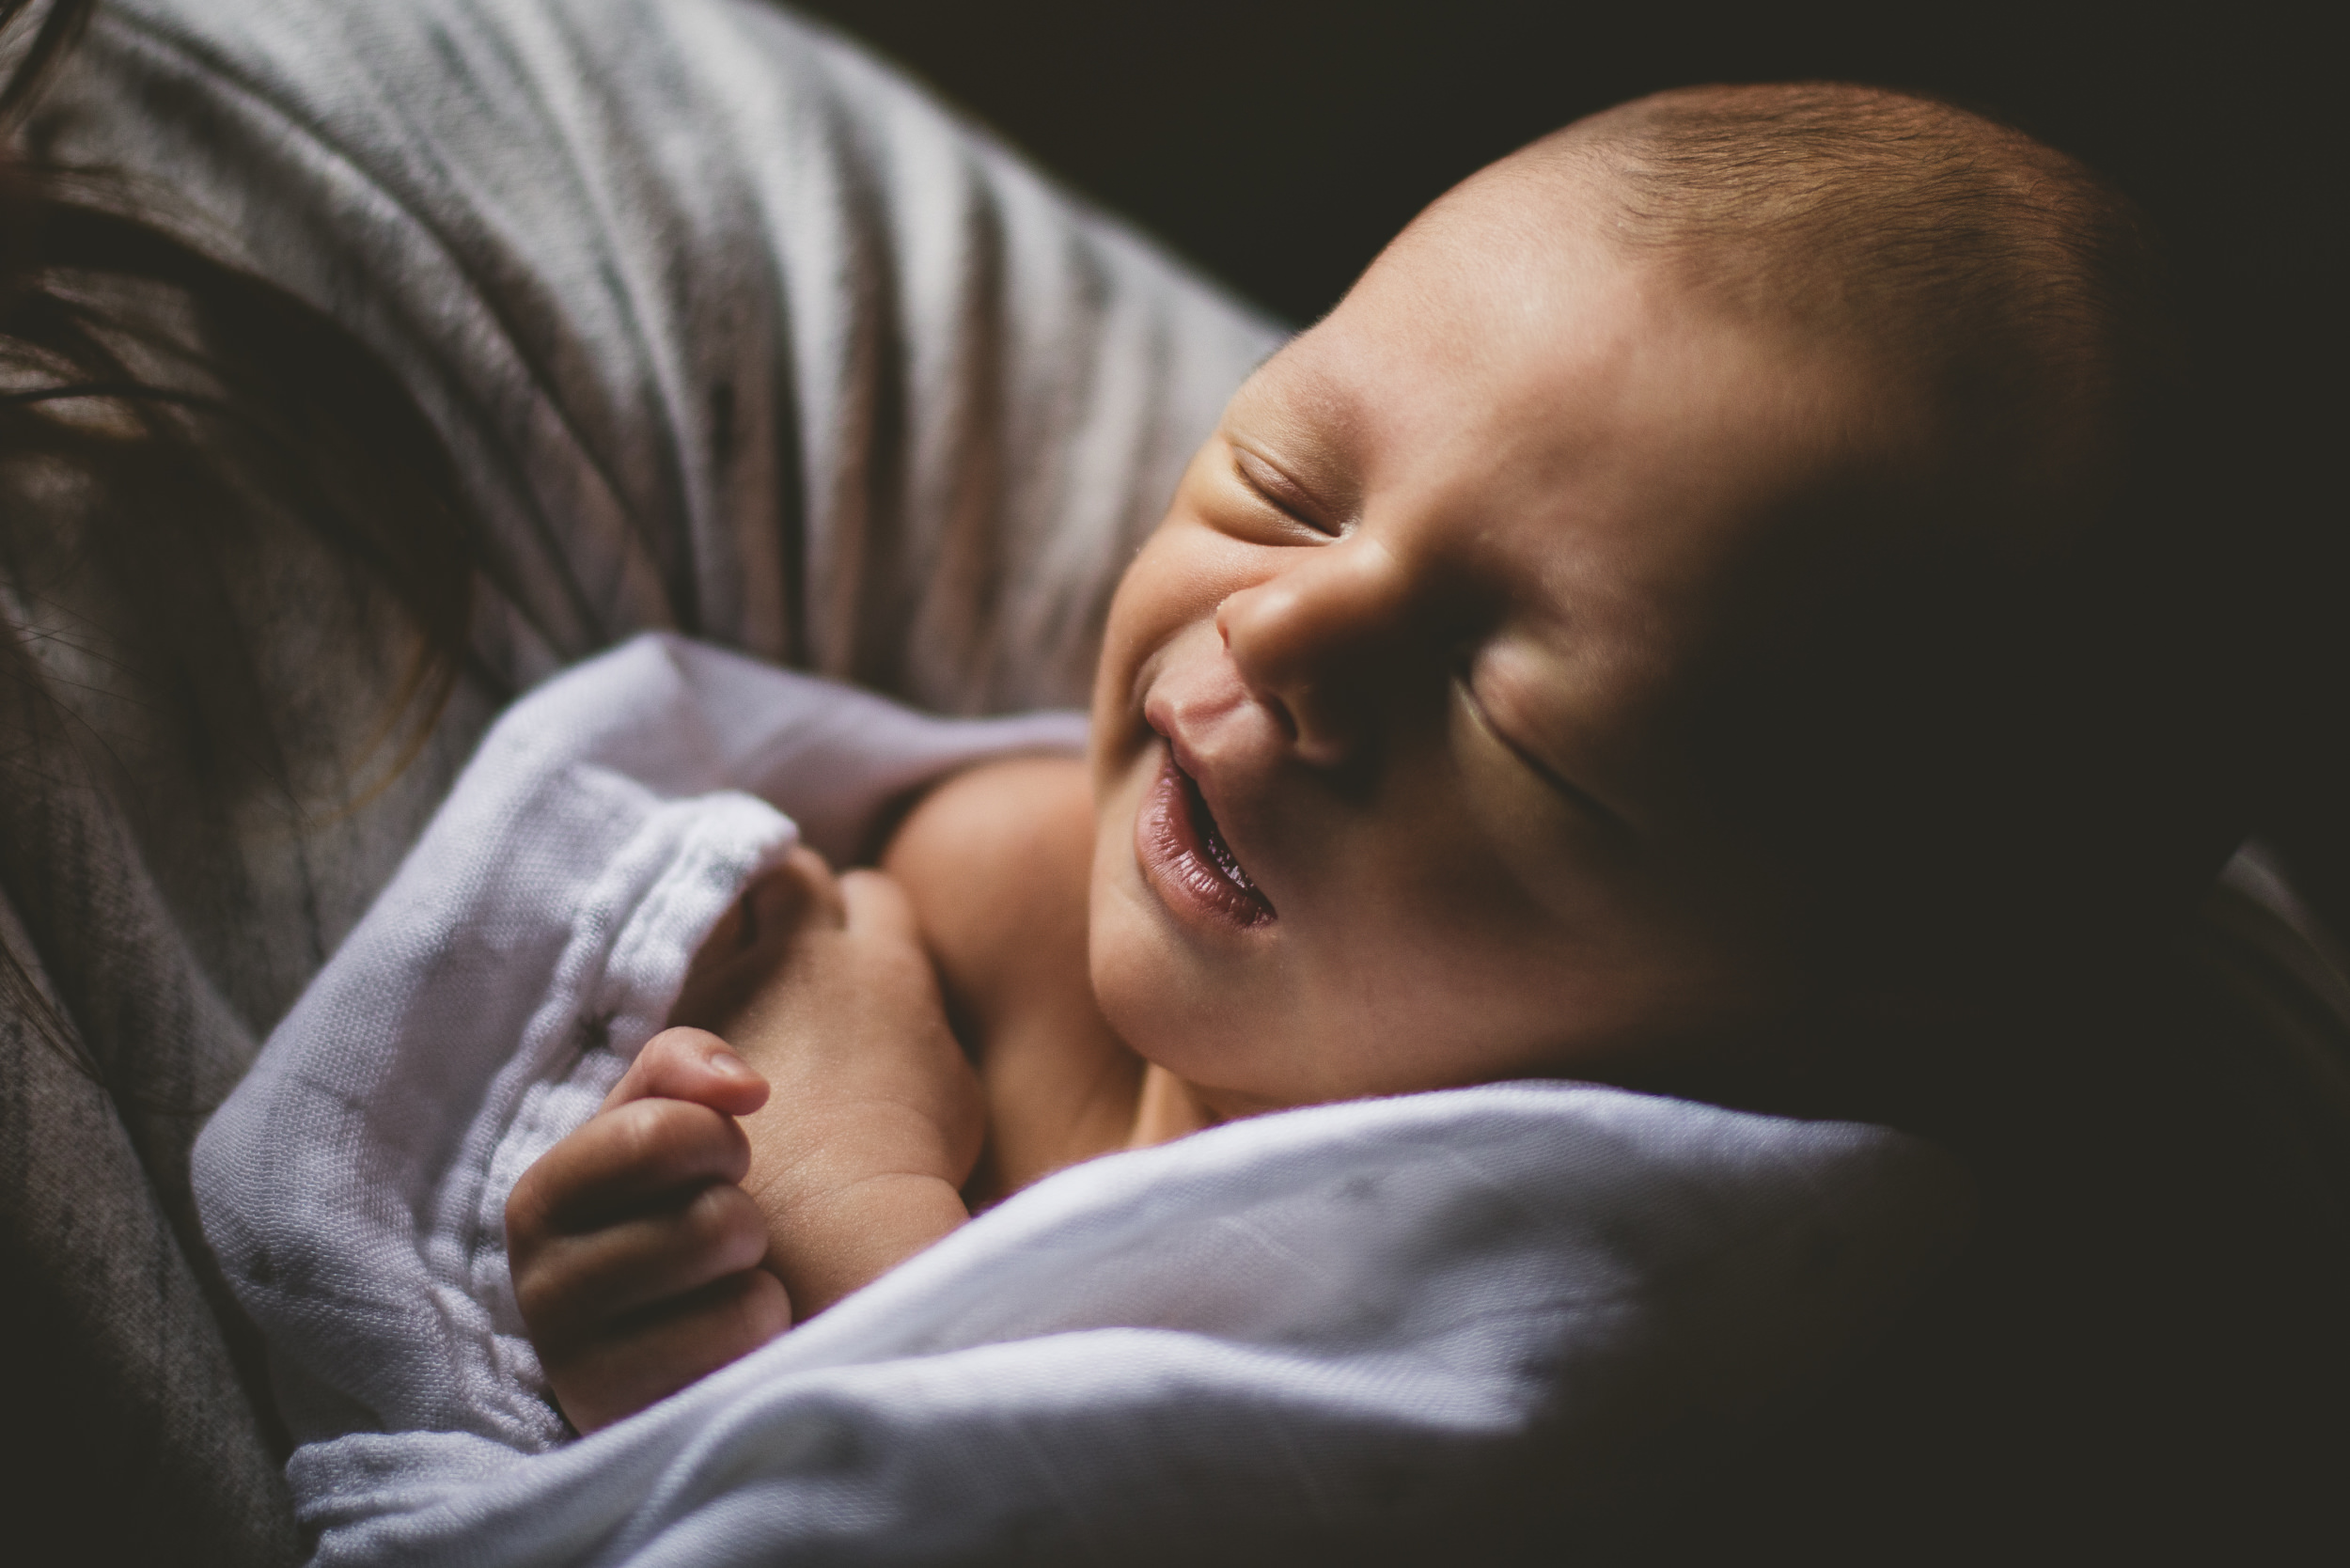 Toronto Newborn Photography: Baby B.